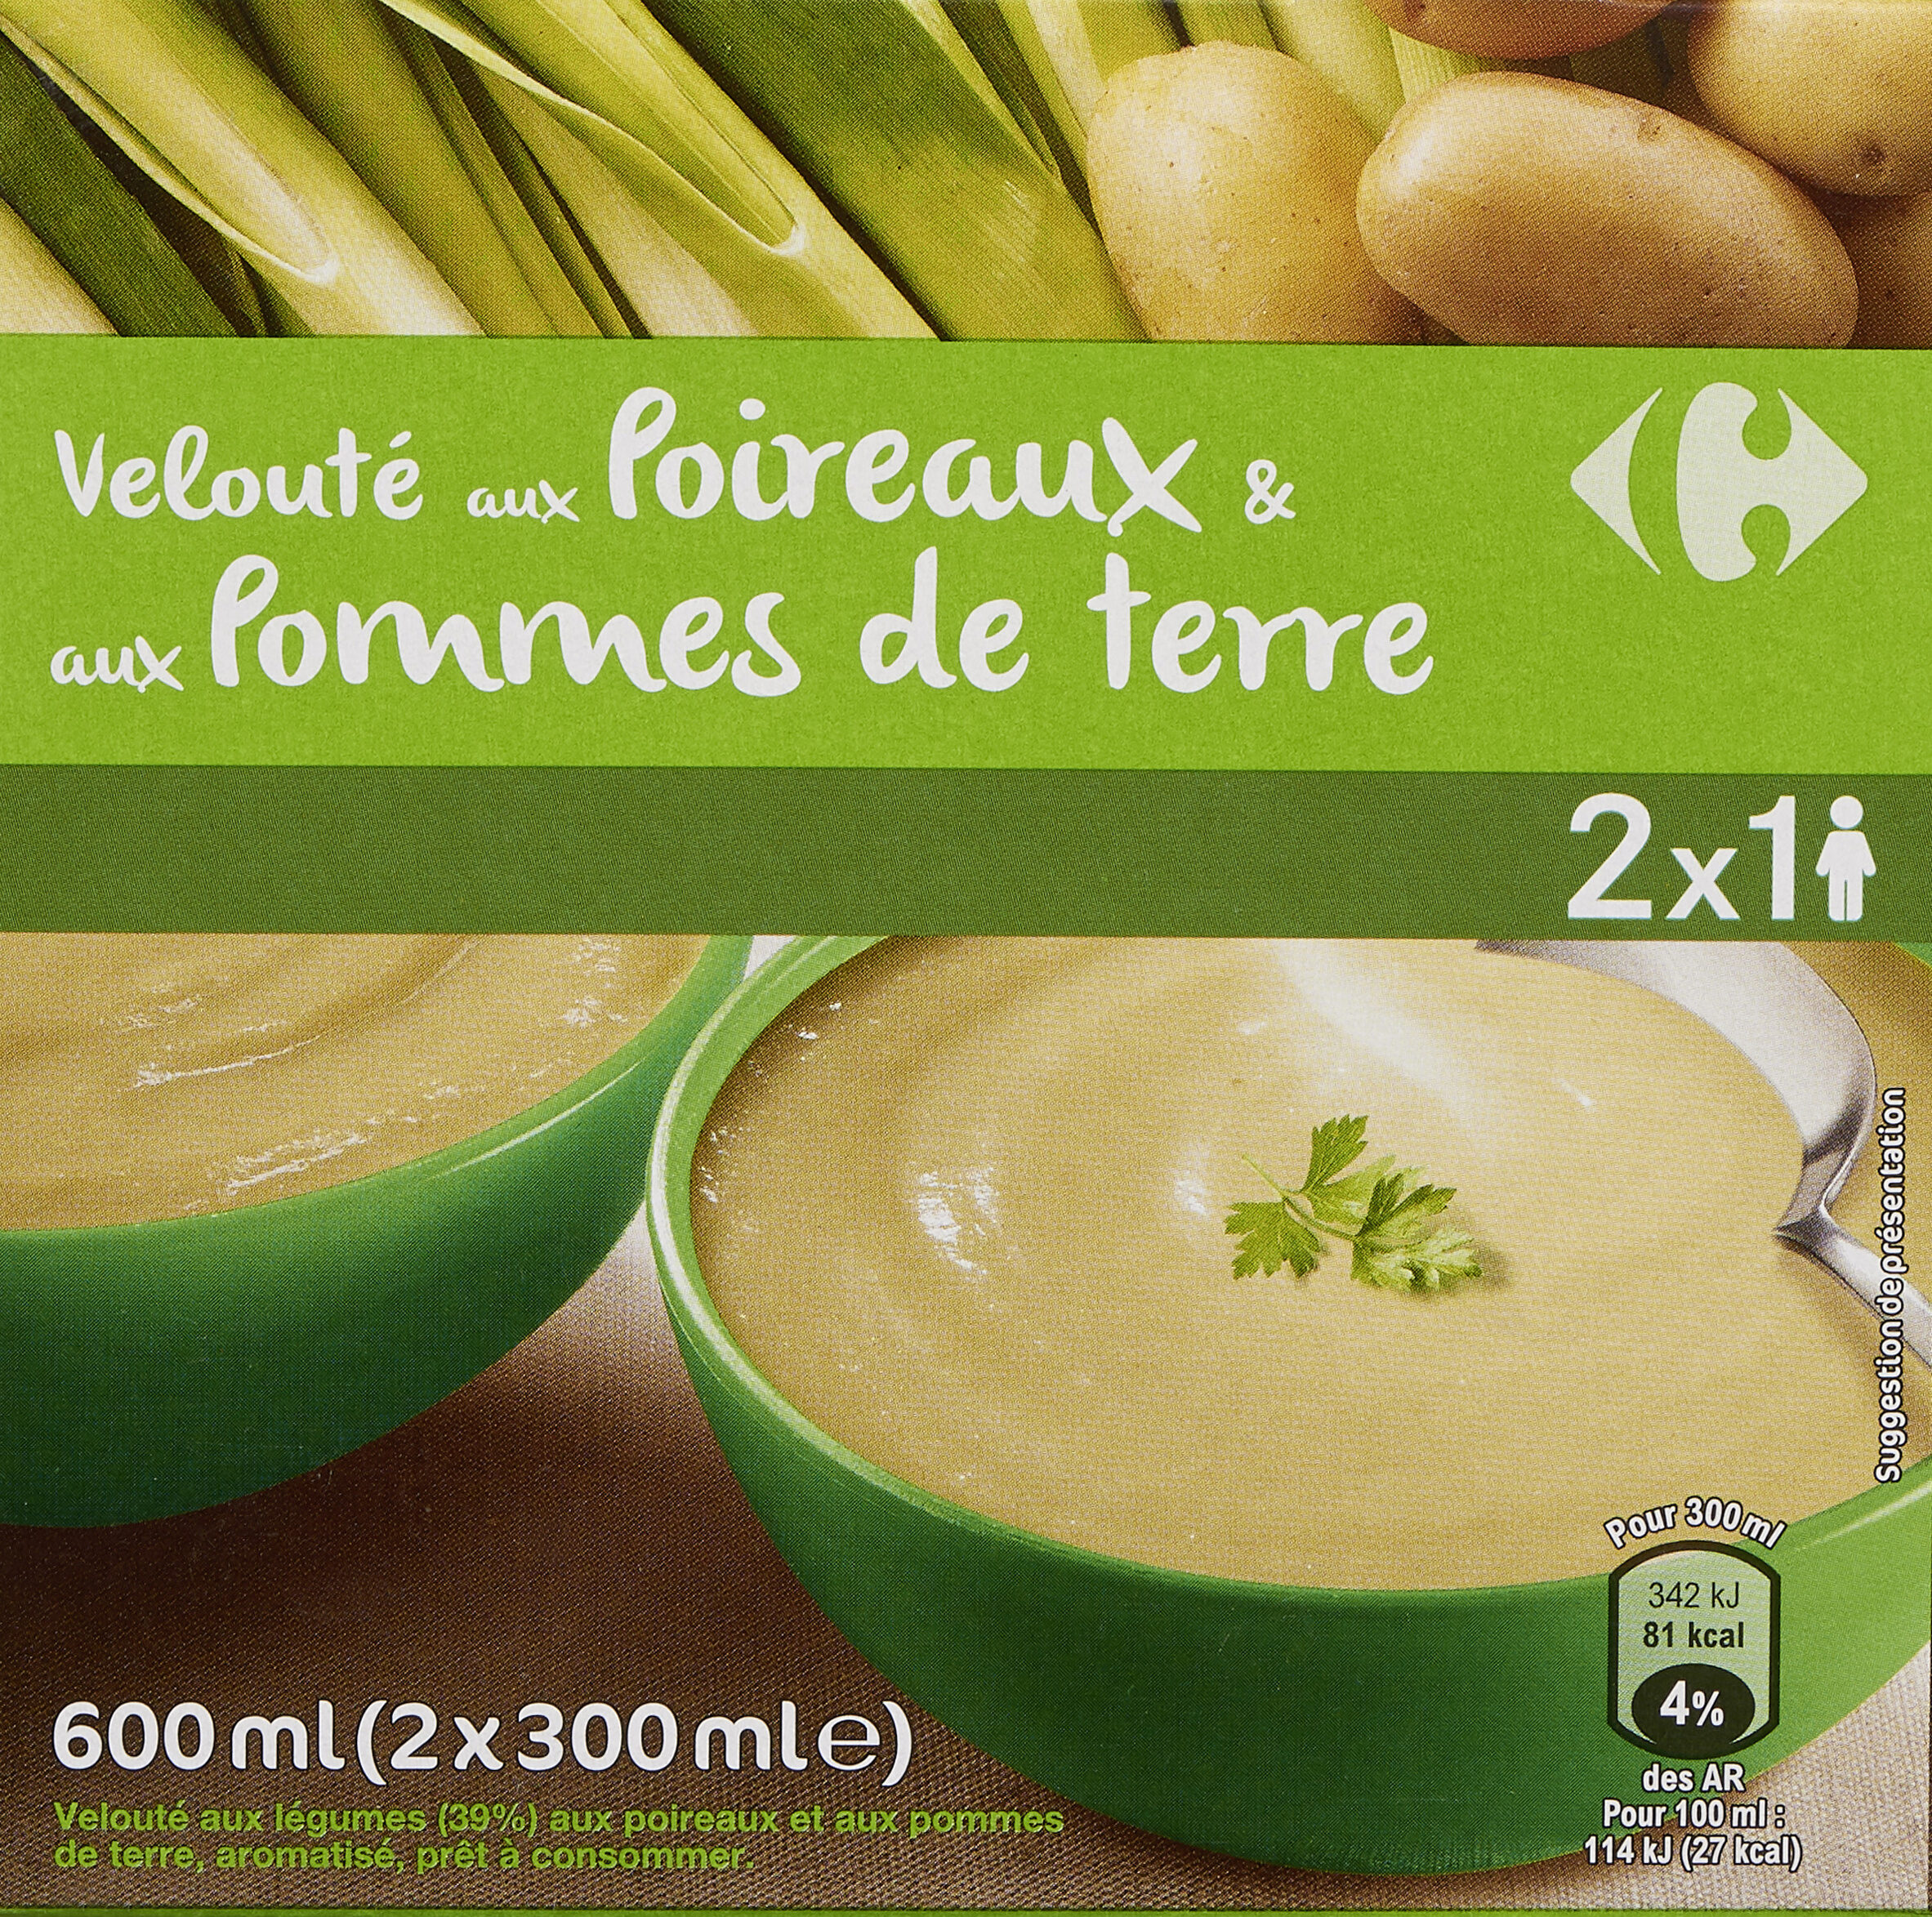 Velouté aux Poireaux & pommes de terre - Producto - fr